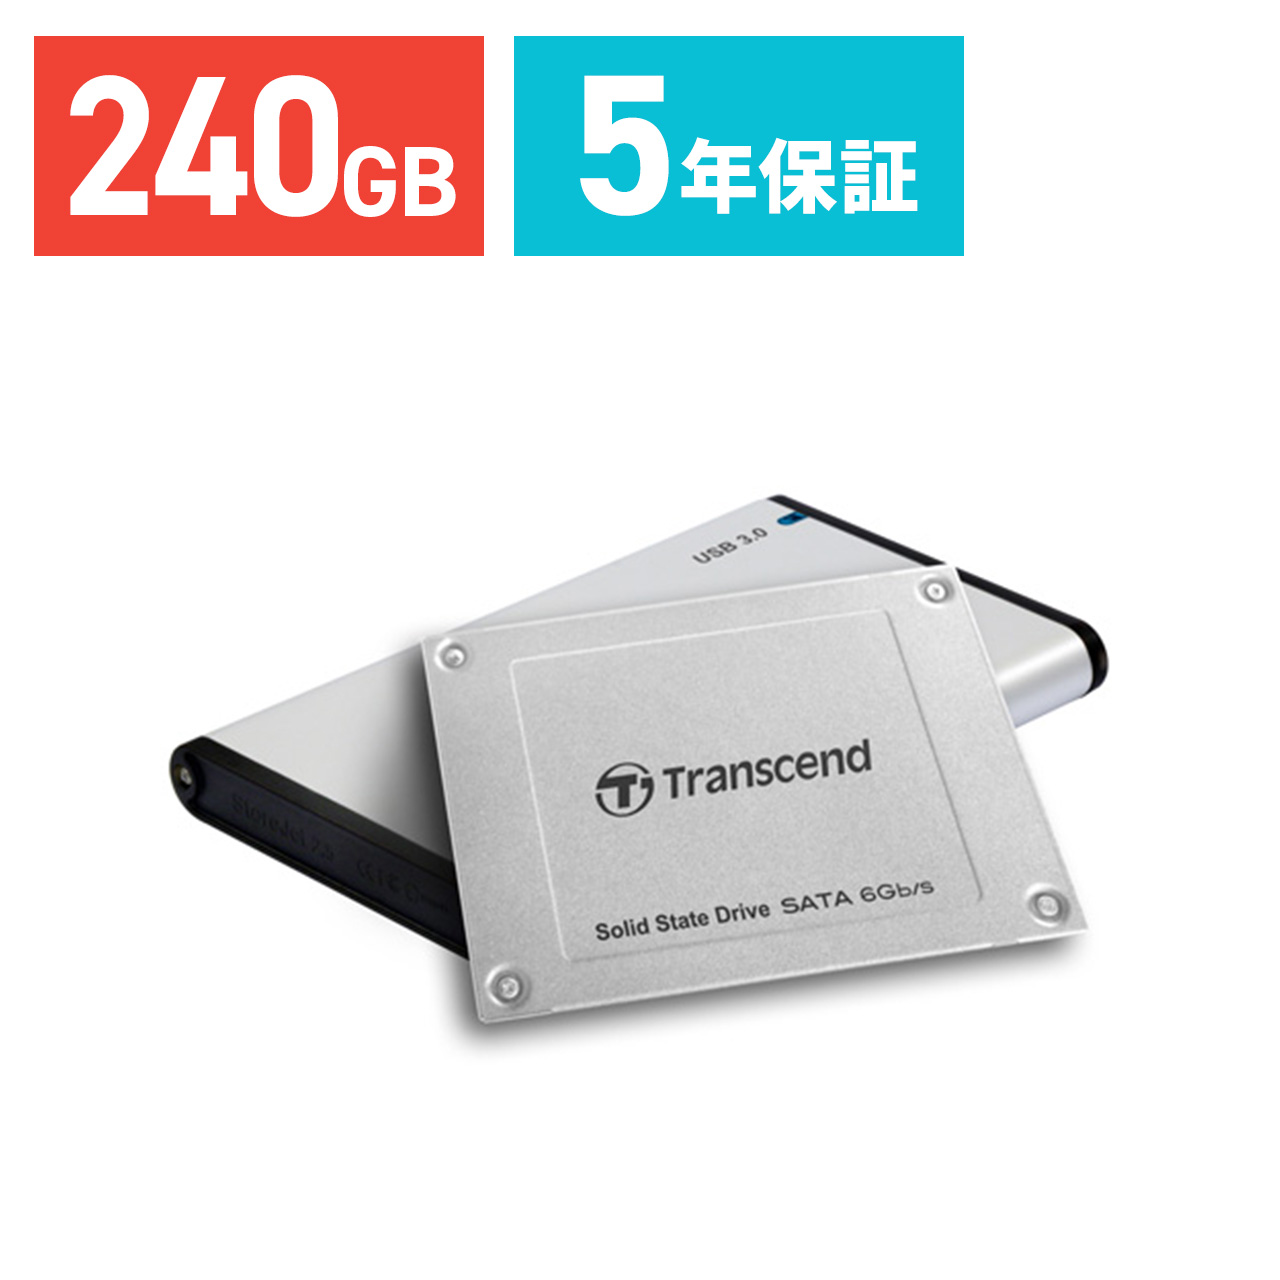 MagicTMac mini 2011 500GB SSD, 6GB Memory